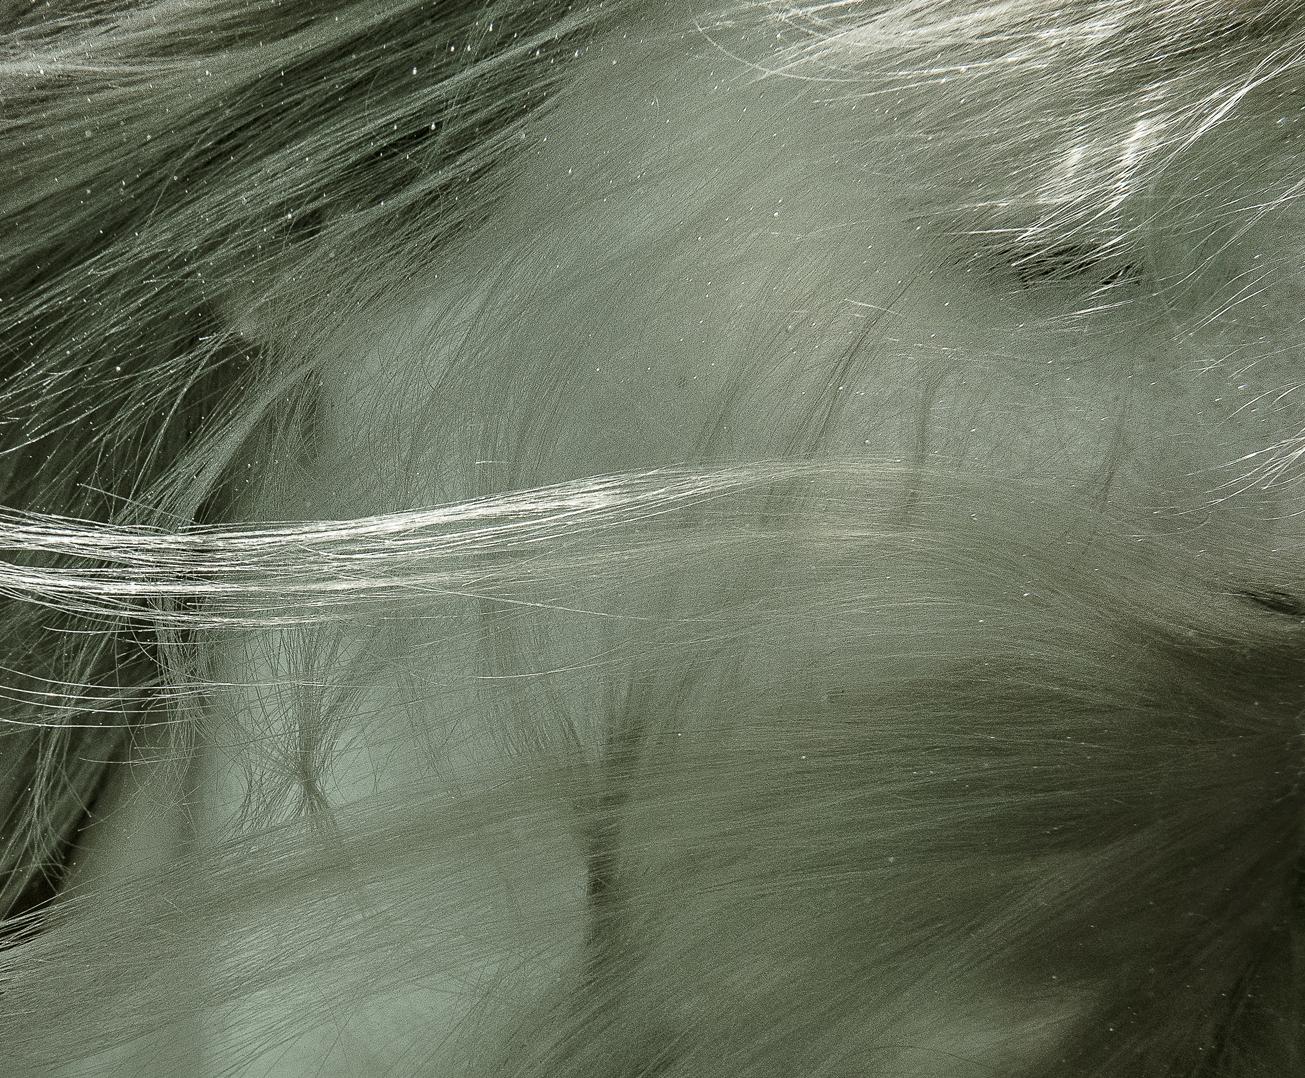 Photographie sous-marine d'une jeune femme aux longs cheveux dorés. Les cheveux couvrent le visage de la femme, ce qui donne à cette photographie figurative une allure d'art abstrait.

Tirage pigmentaire d'archives original de qualité galerie sur